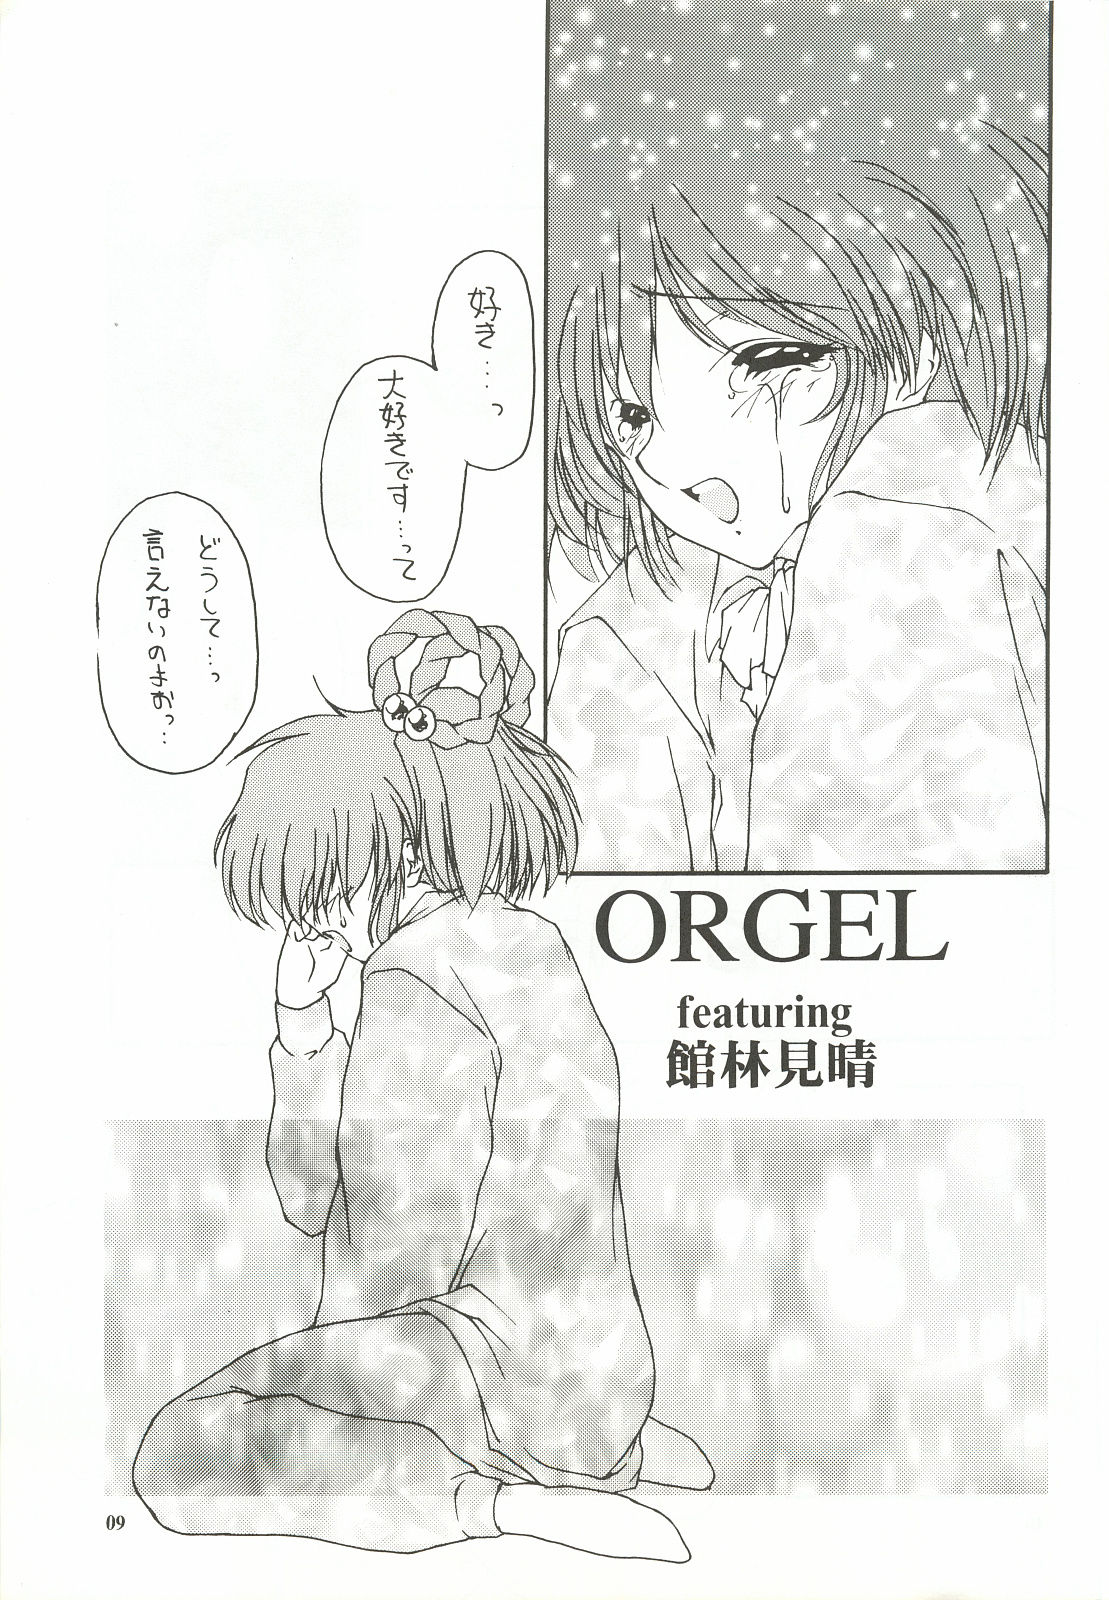 [Chimeishou (Ami Hideto)] ORGEL featuring Tatebayashi Miharu (Tokimeki Memorial) [致命傷 (弥舞秀人)] ORGEL featuring 館林見晴 (ときめきメモリアル)